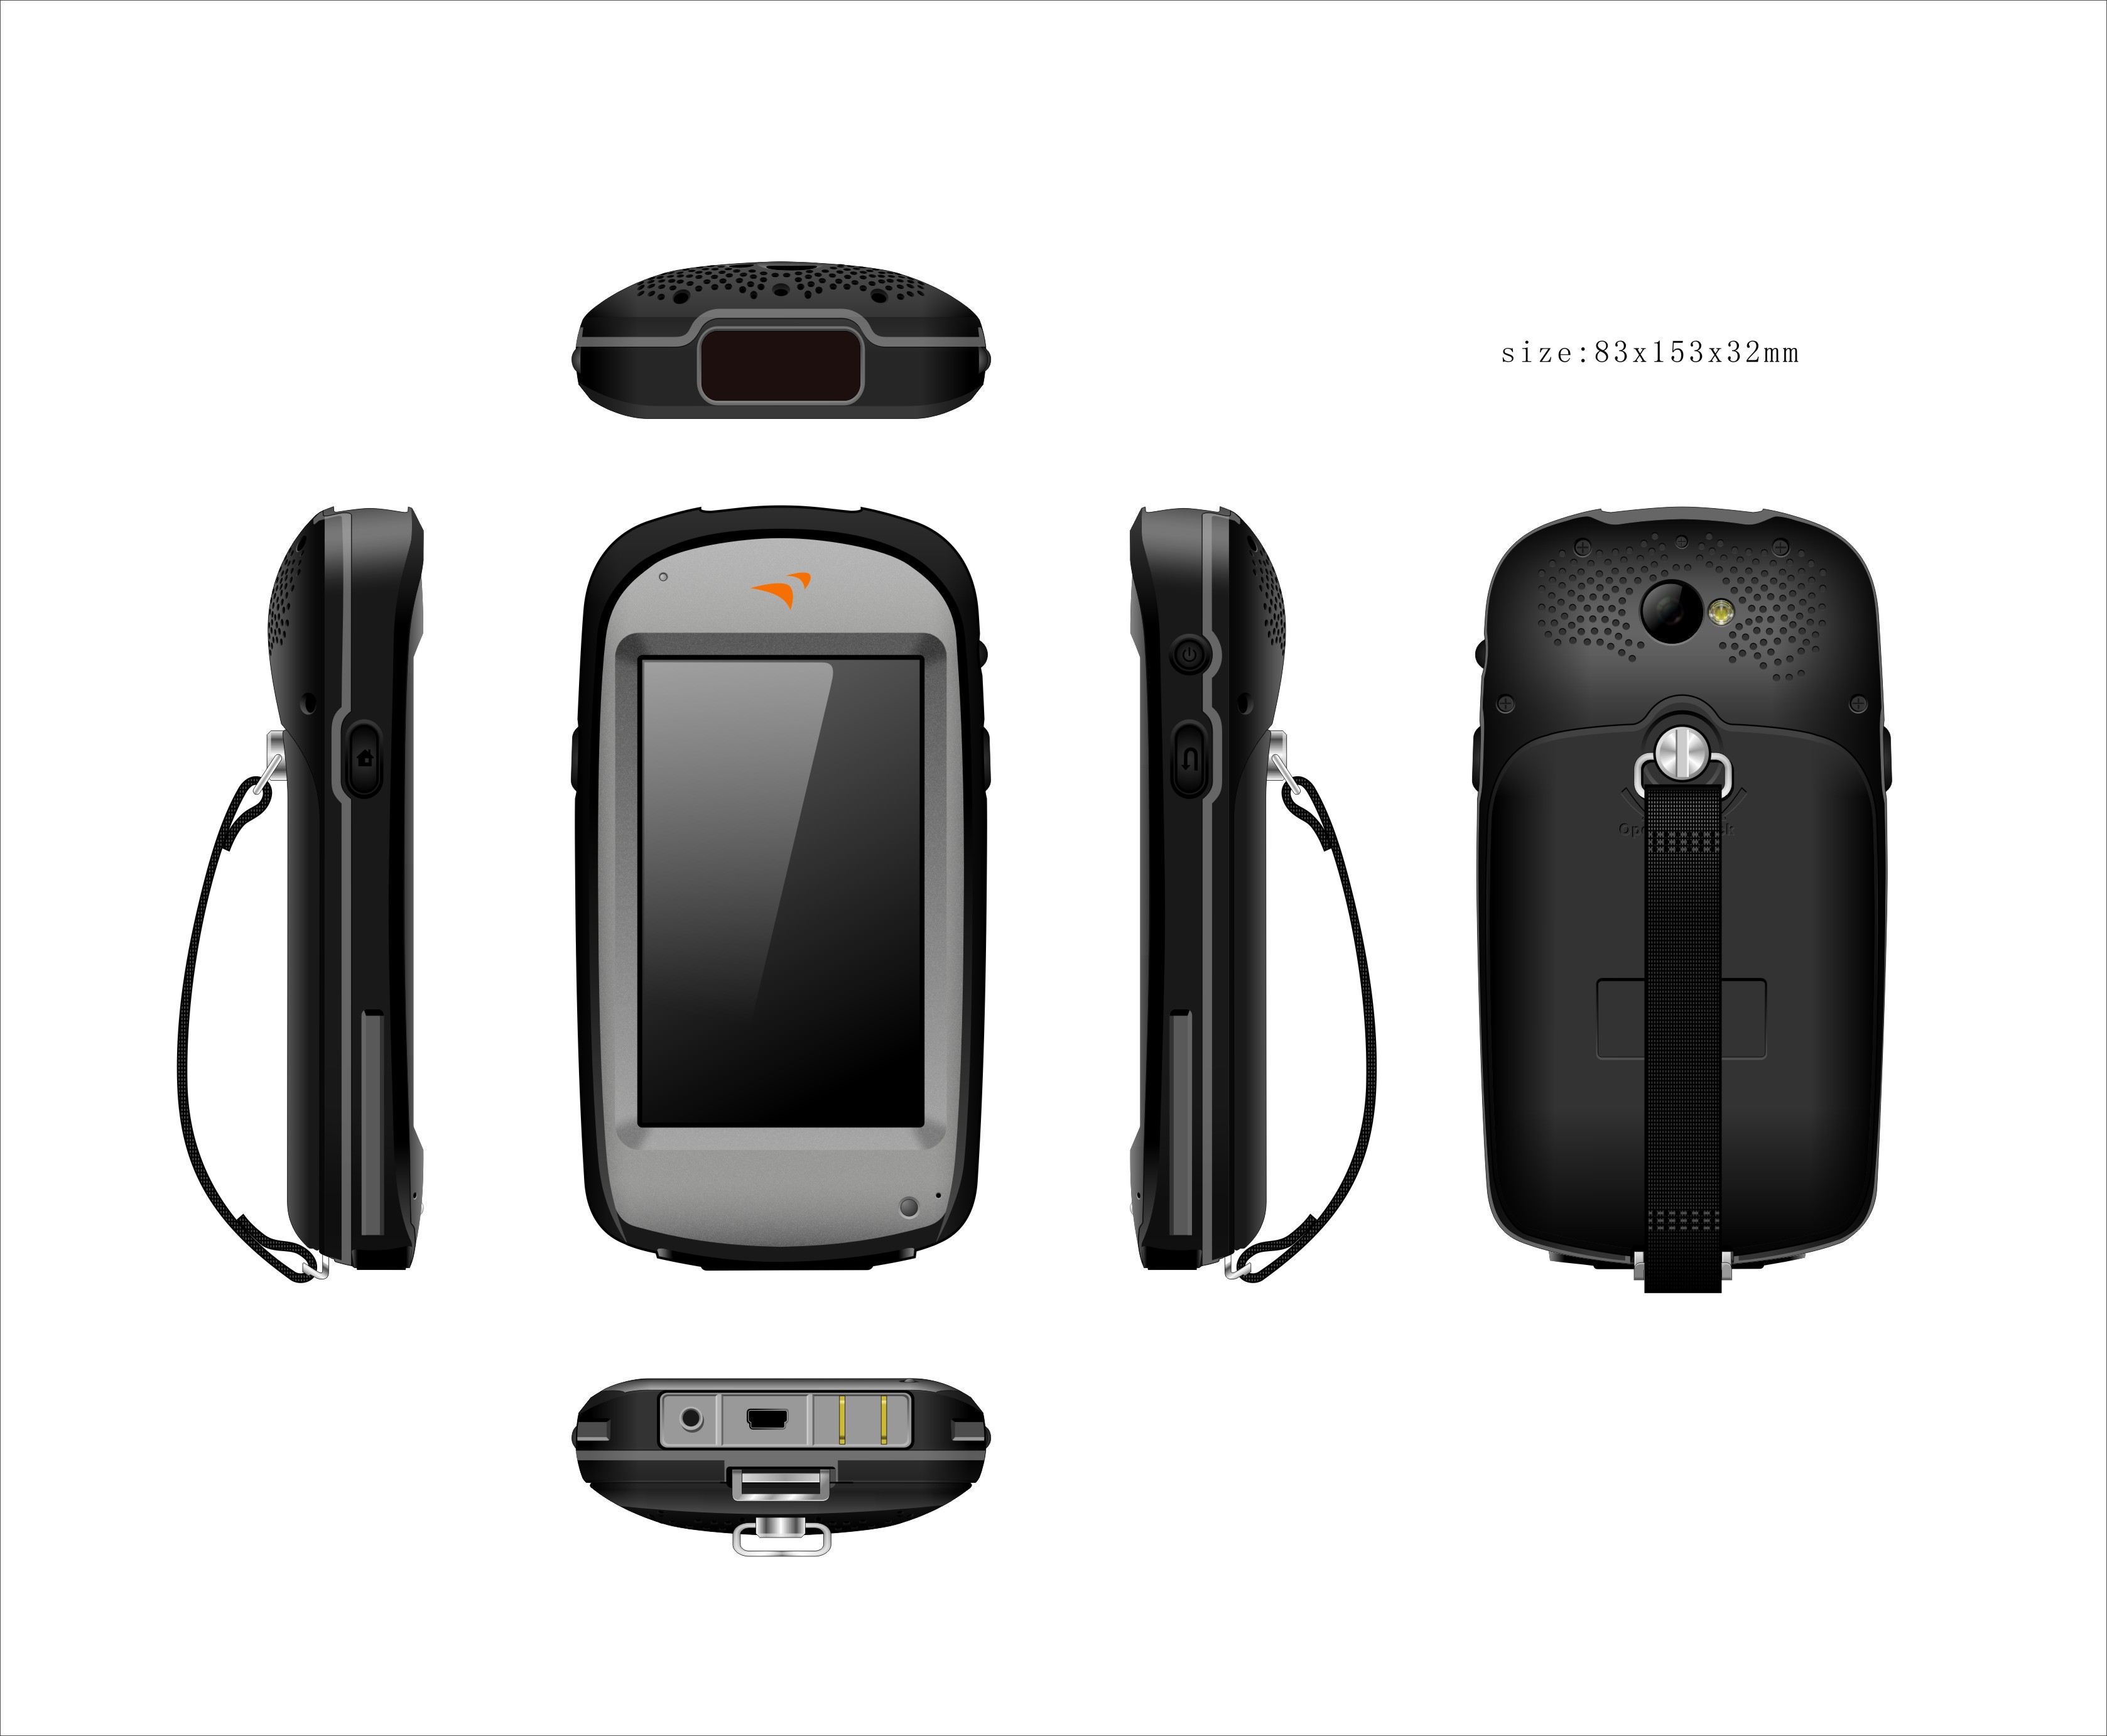 4.3" Portable Handheld MDT for Navigation